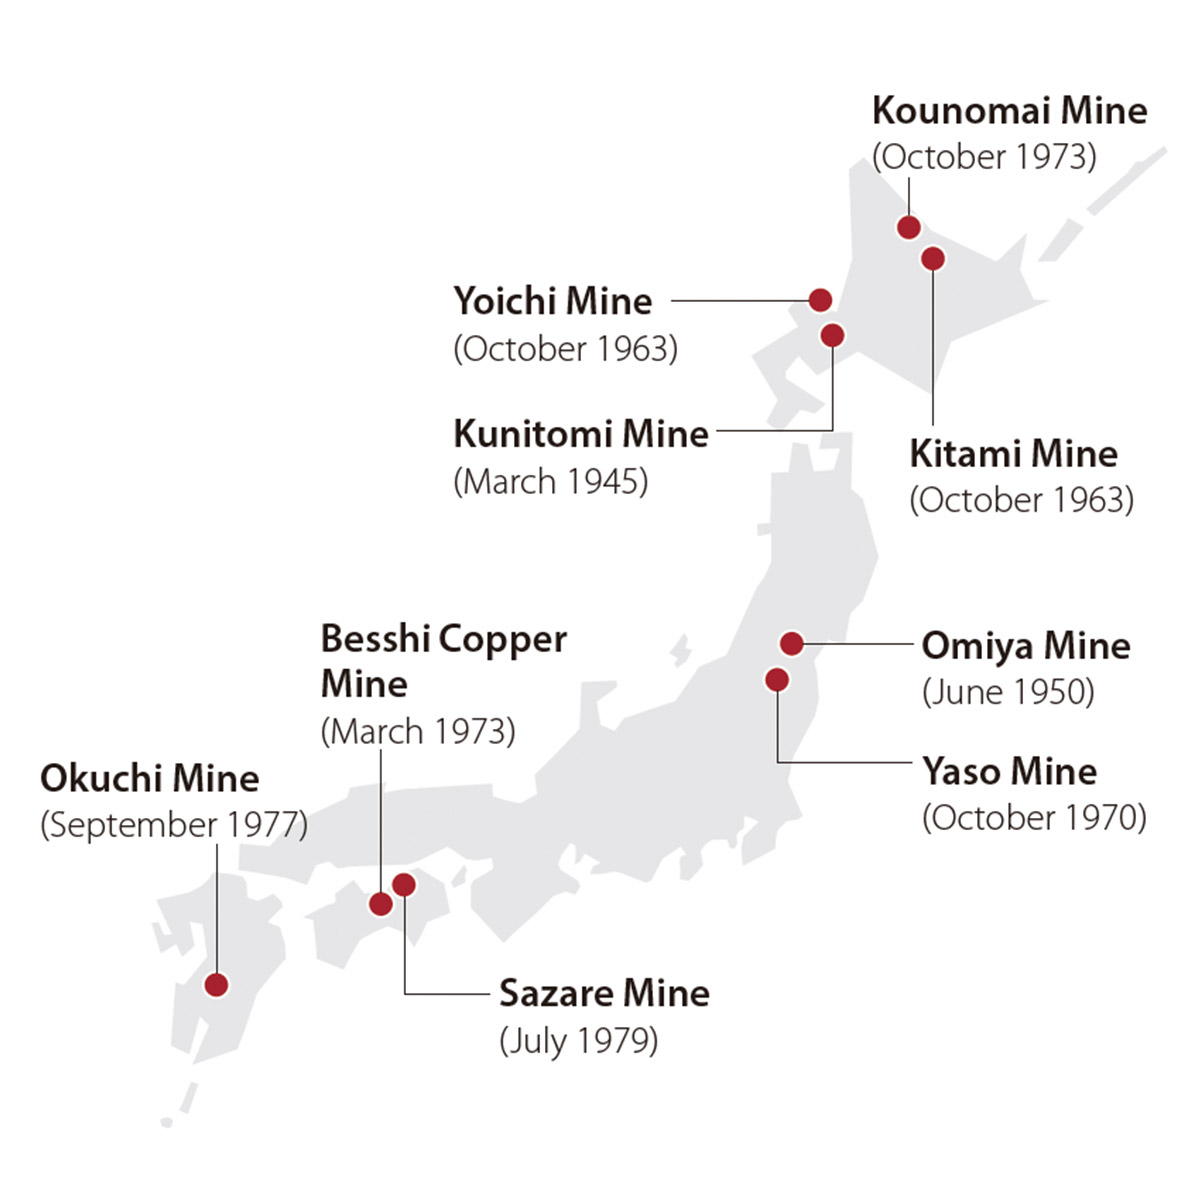 Konomai Mine (closed: October 1973), Kitami Mine (closed: October 1963), Yoichi Mine (closed: October 1963), Kunitomi Mine (closed: March 1945), Yaso Mine (closed: October 1970), Omiya Mine (closed: June 1950), Sazare Mine (closed: July 1979), Besshi Mine (closed: March 1973), Okuchi Mine (closed: September 1977) 